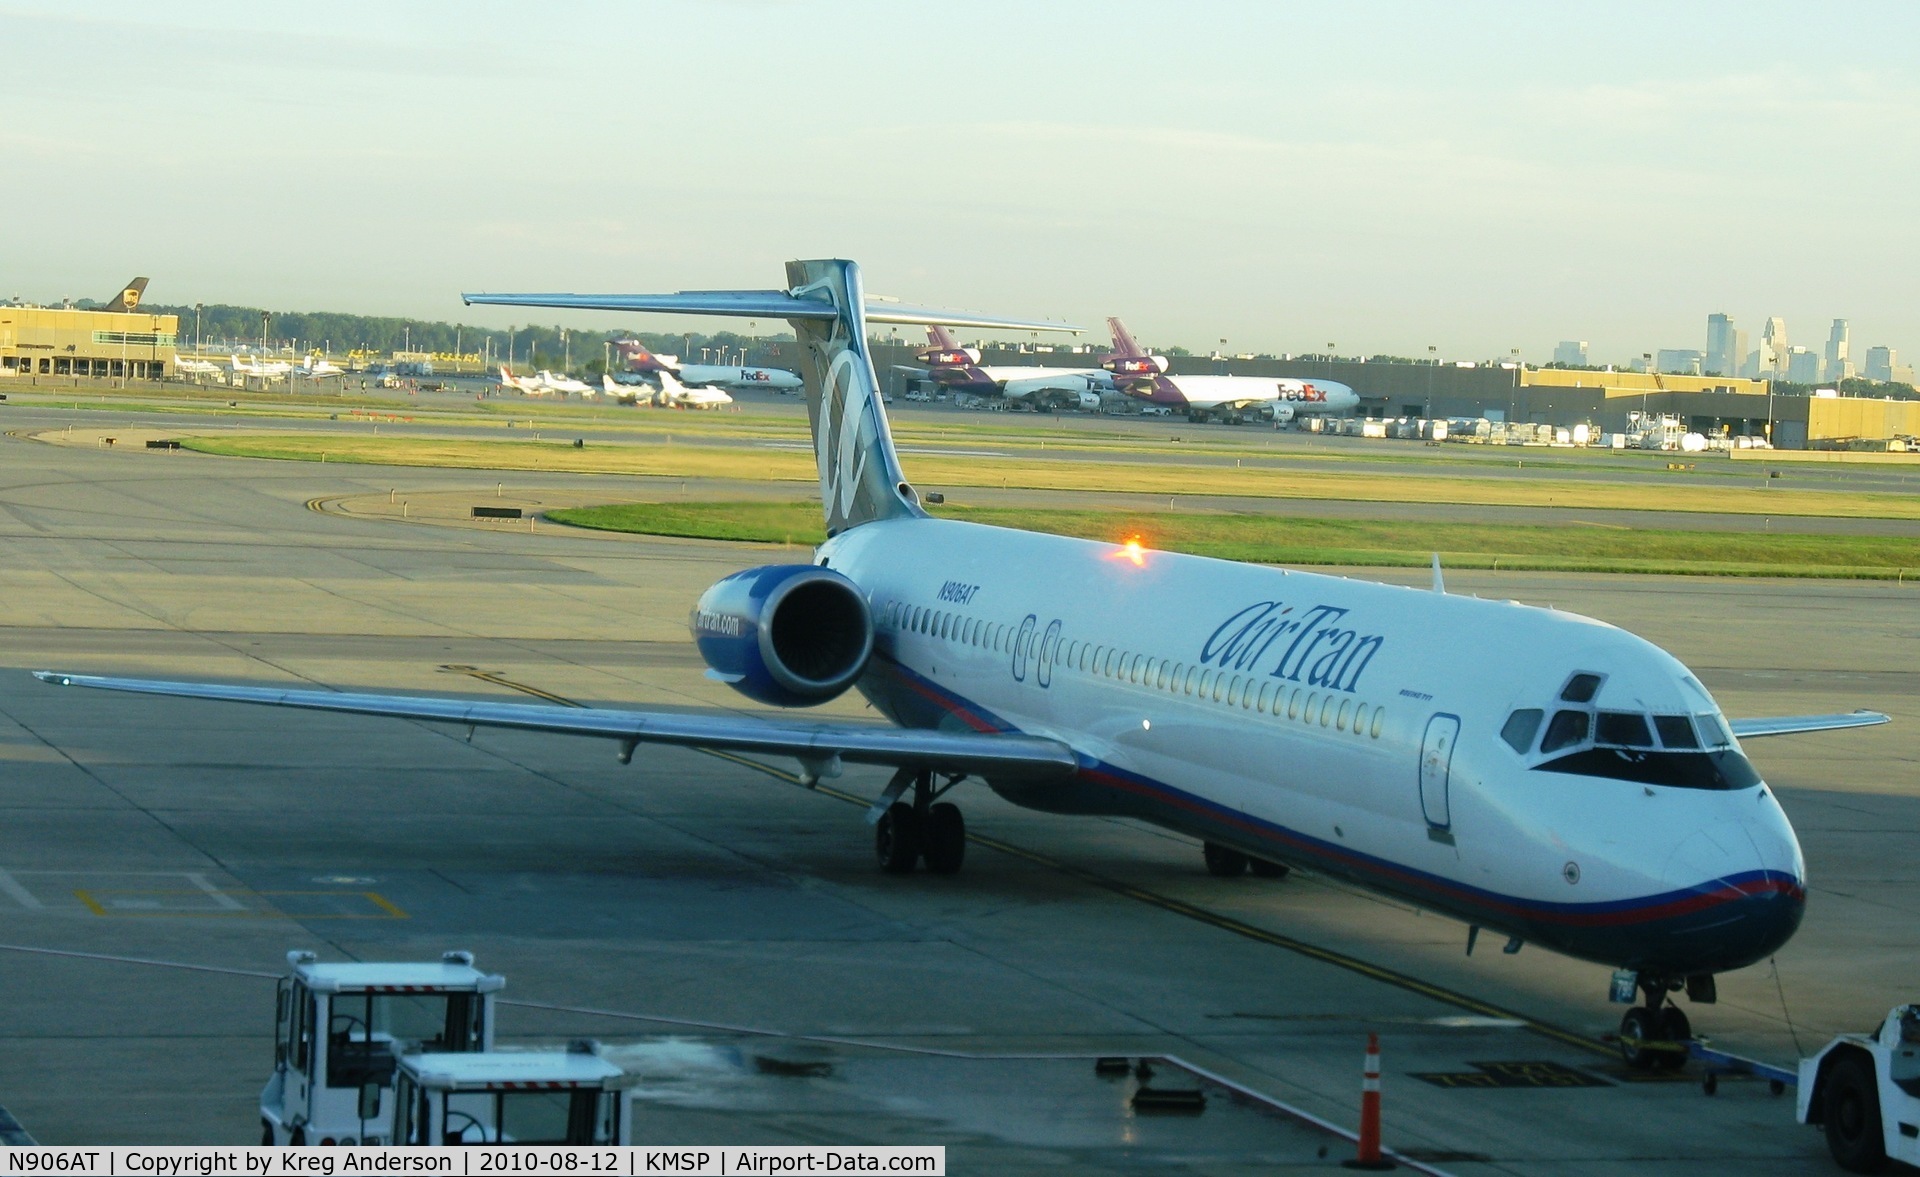 N906AT, 2001 Boeing 717-200 C/N 55087, AirTran Boeing 717-200 at the gate.